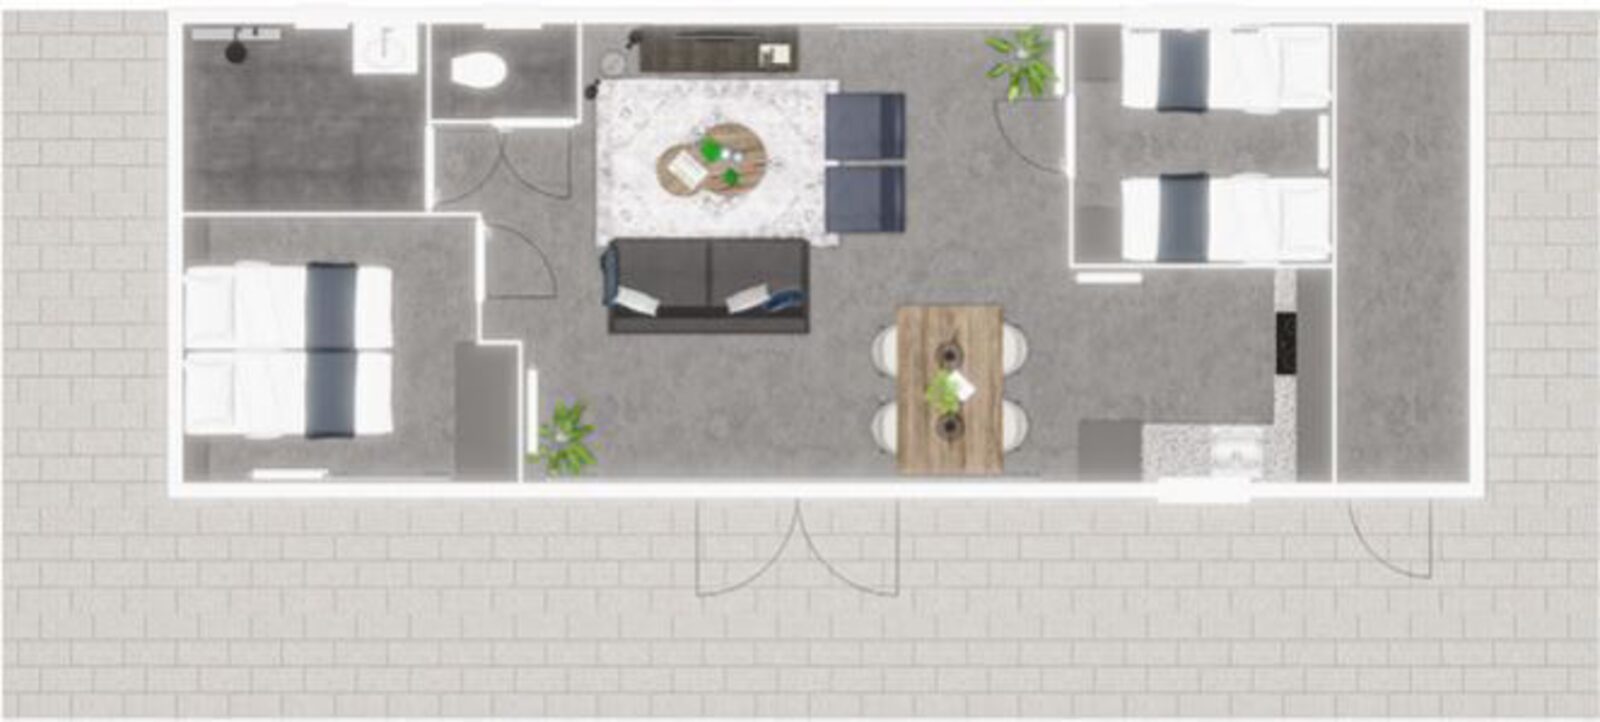 Premium Lodge I 4 personnes (58 m²)